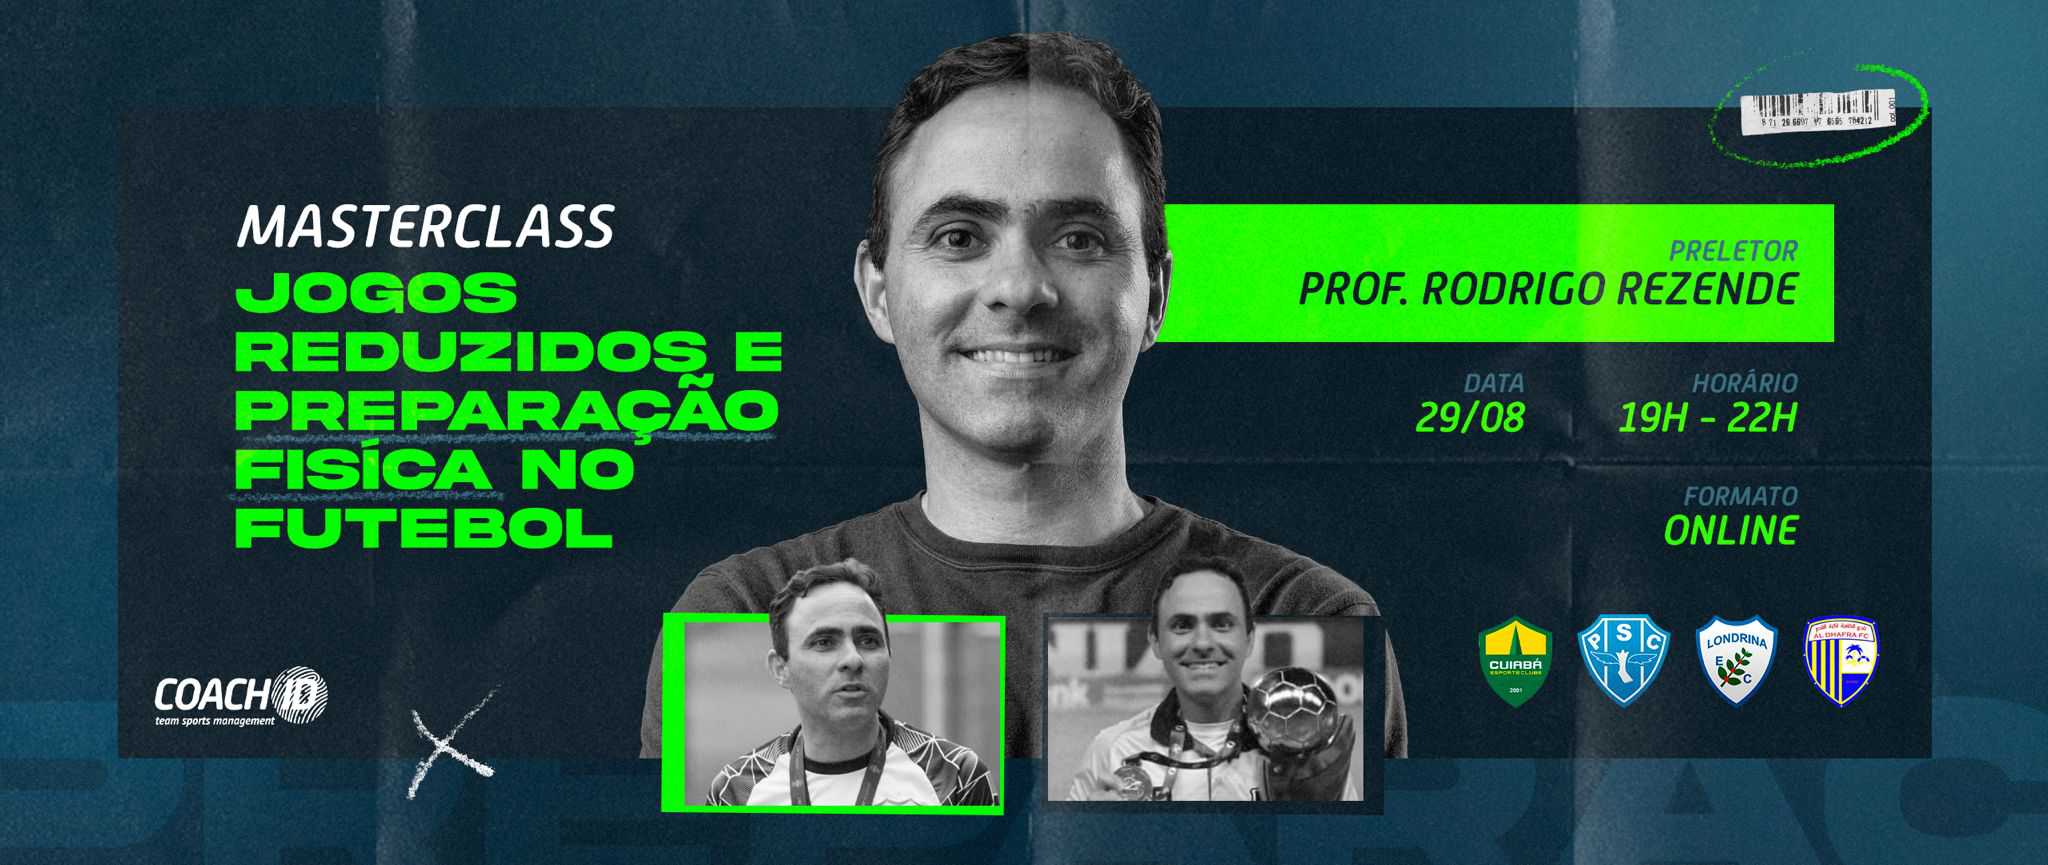 Masterclass com Rodrigo Rezende - Os Jogos Reduzidos e a Preparação Física no Futebol